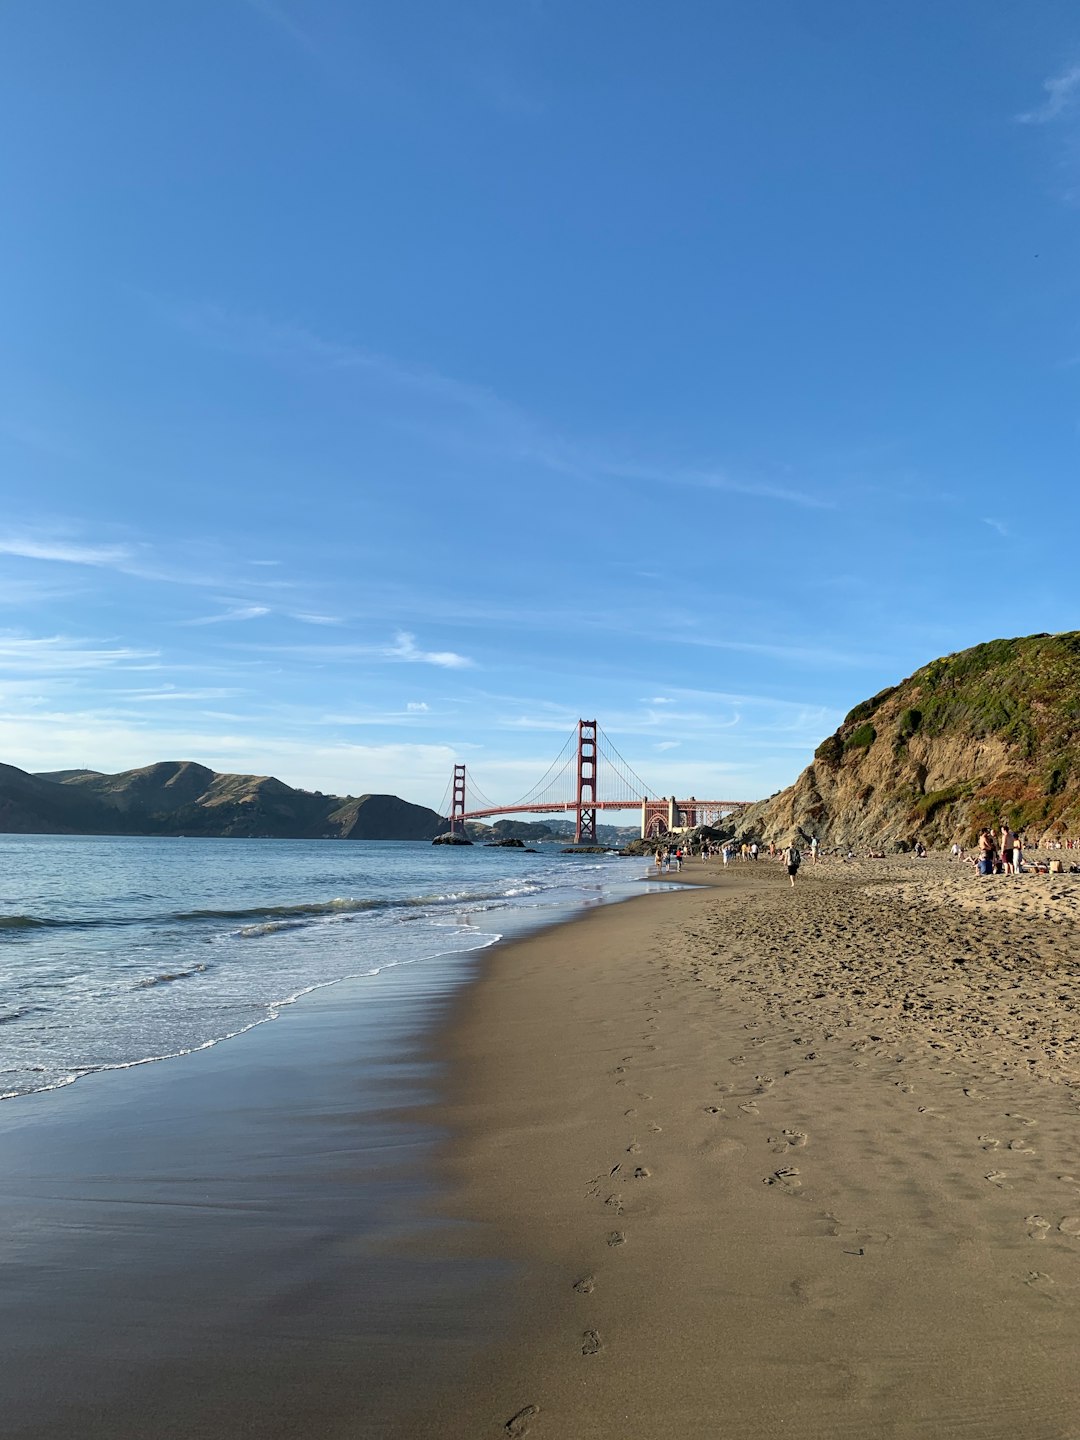 Beach photo spot Sand Ladder at Baker Beach Golden Gate Bridge